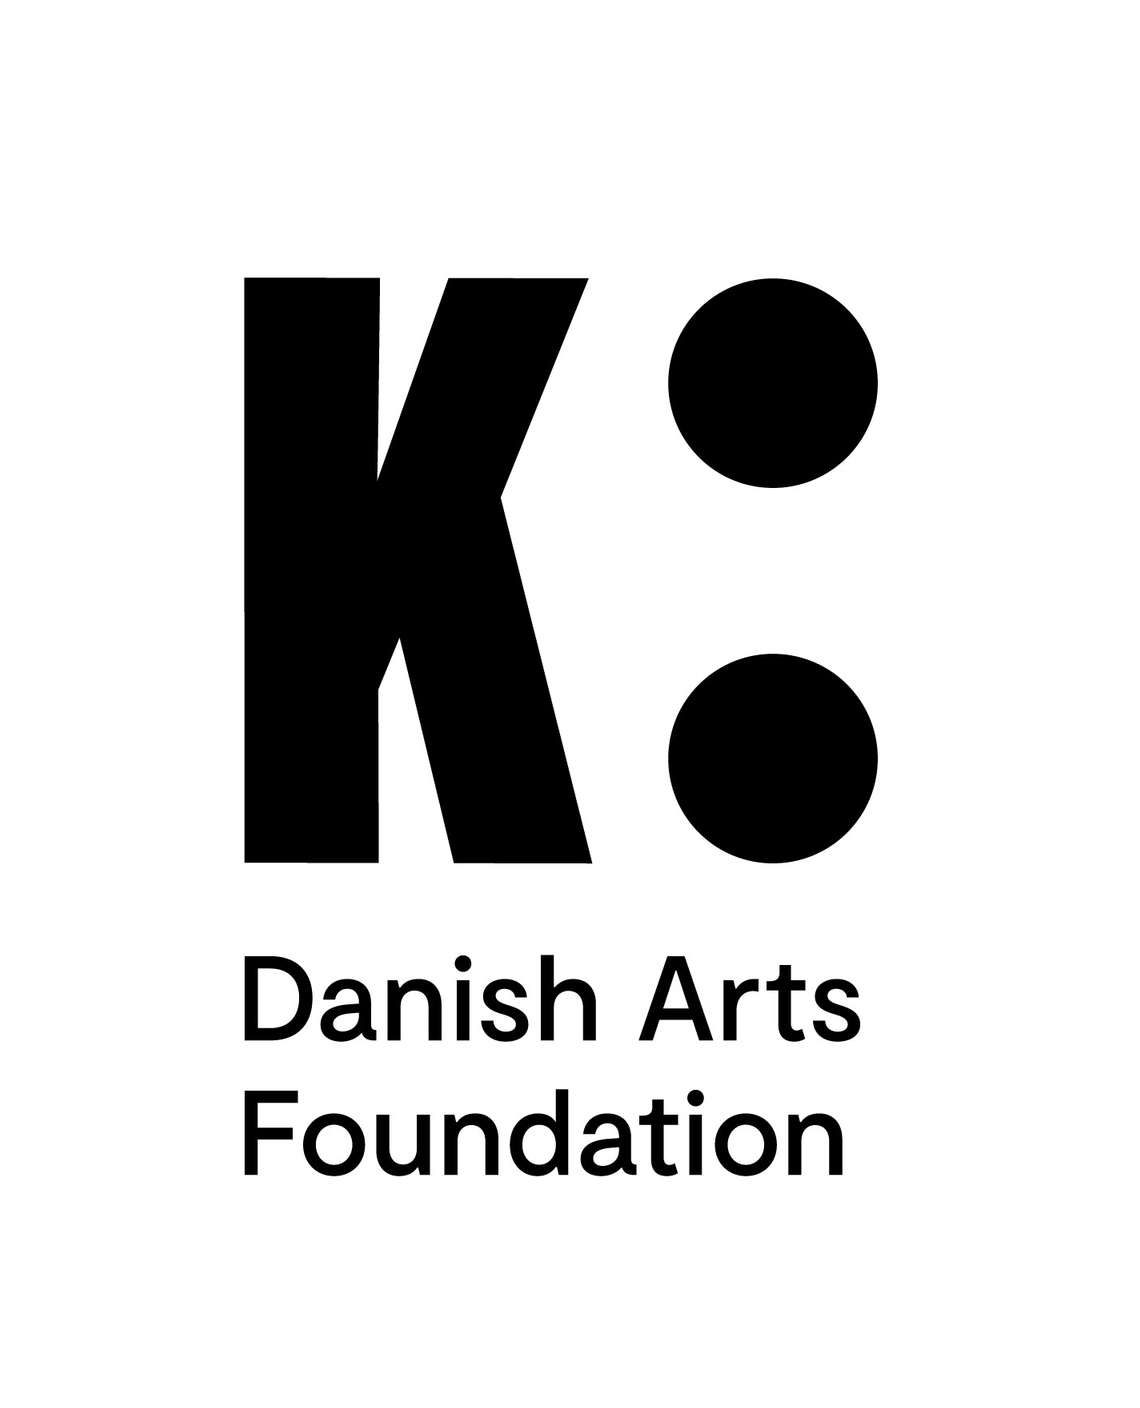 Danish Arts Foundation logo